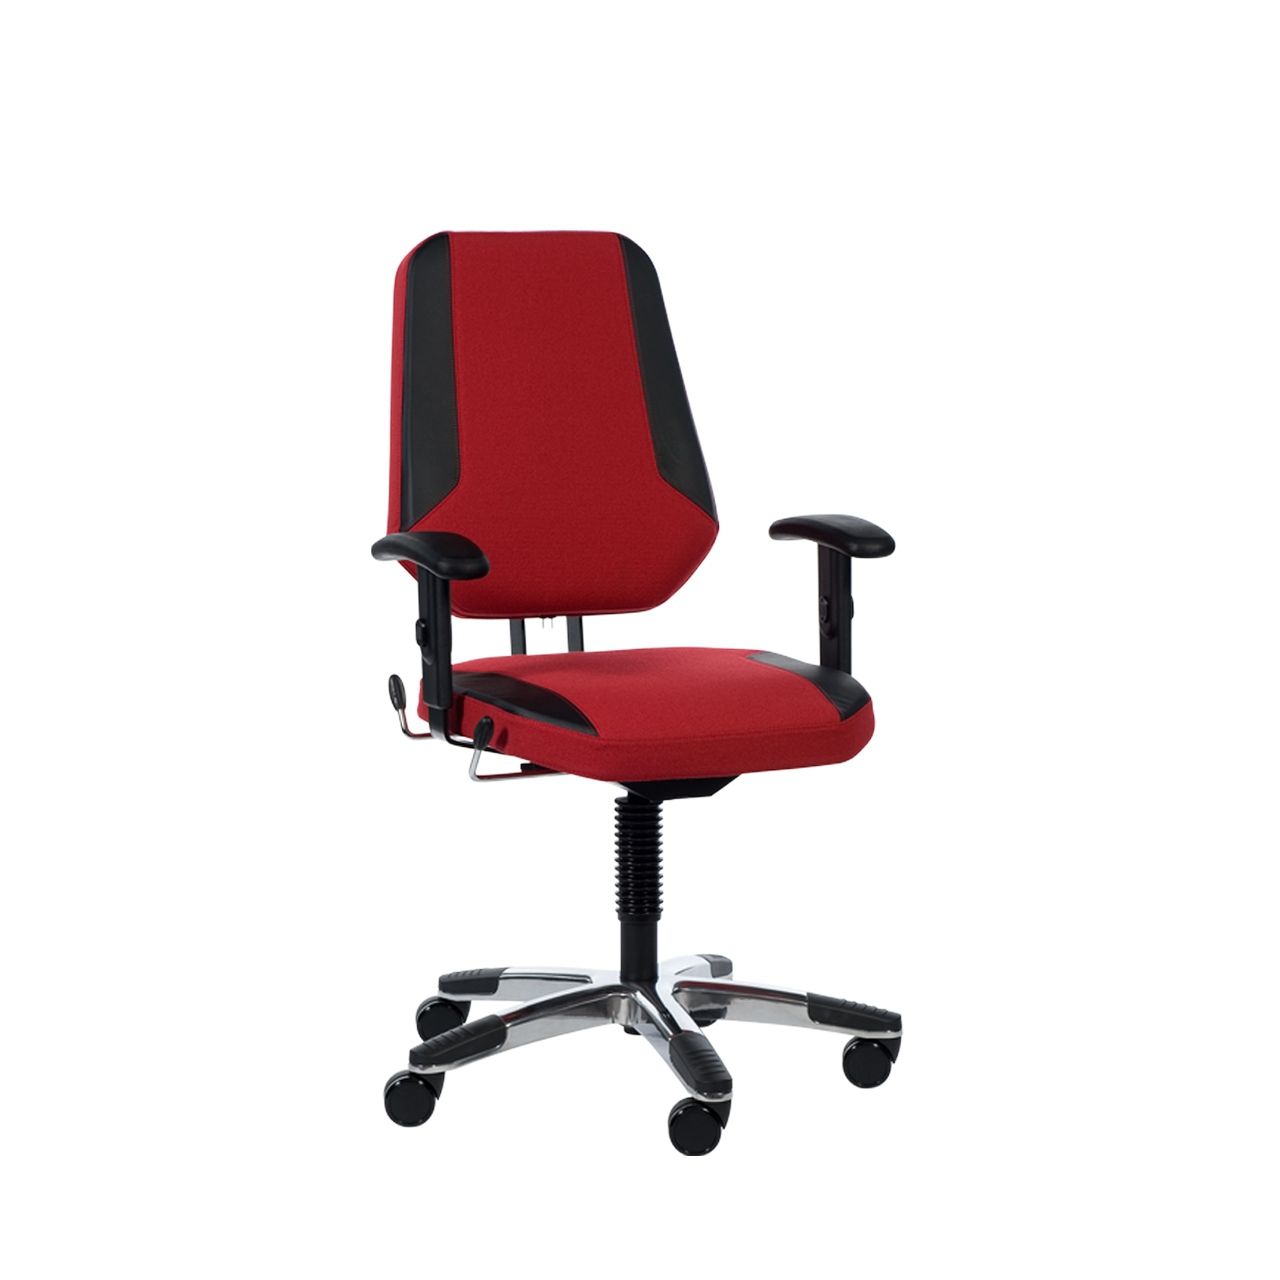 Maxx-line-small-bureaustoel-stkamax300_0022s_0000_voorkant_1